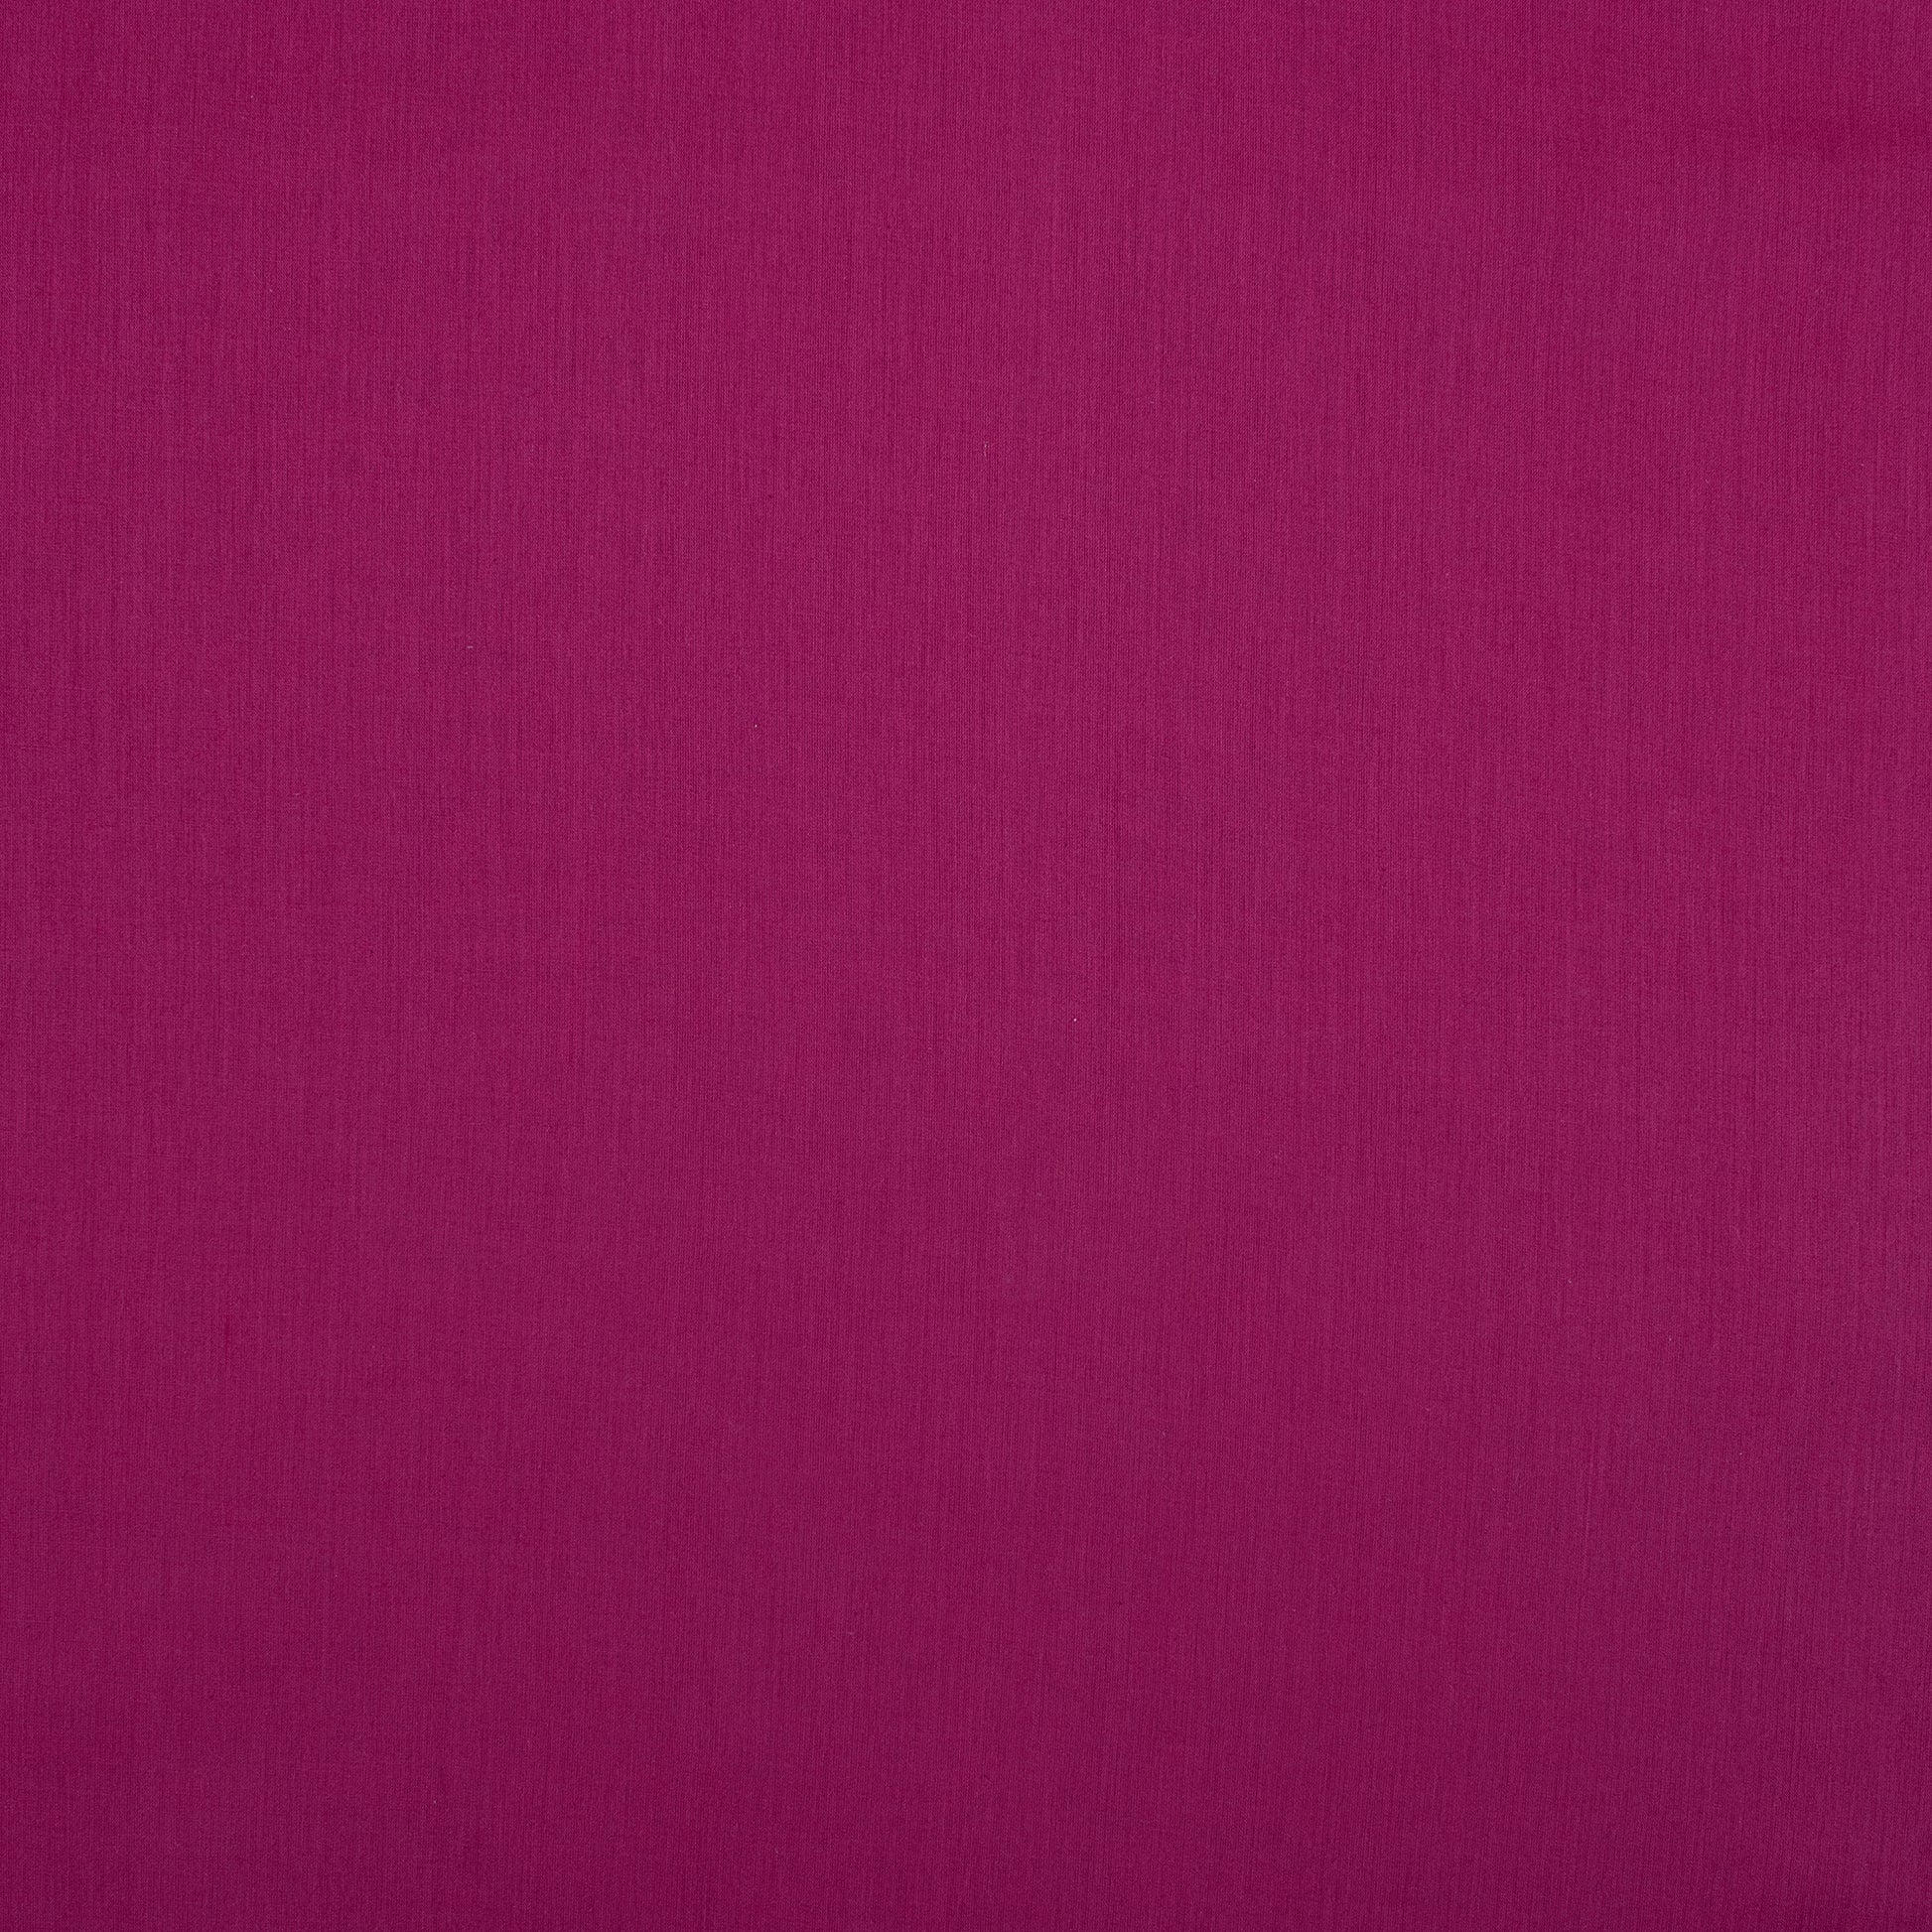 Purple Premium Pure Cotton Dyed Plain Cloth Material